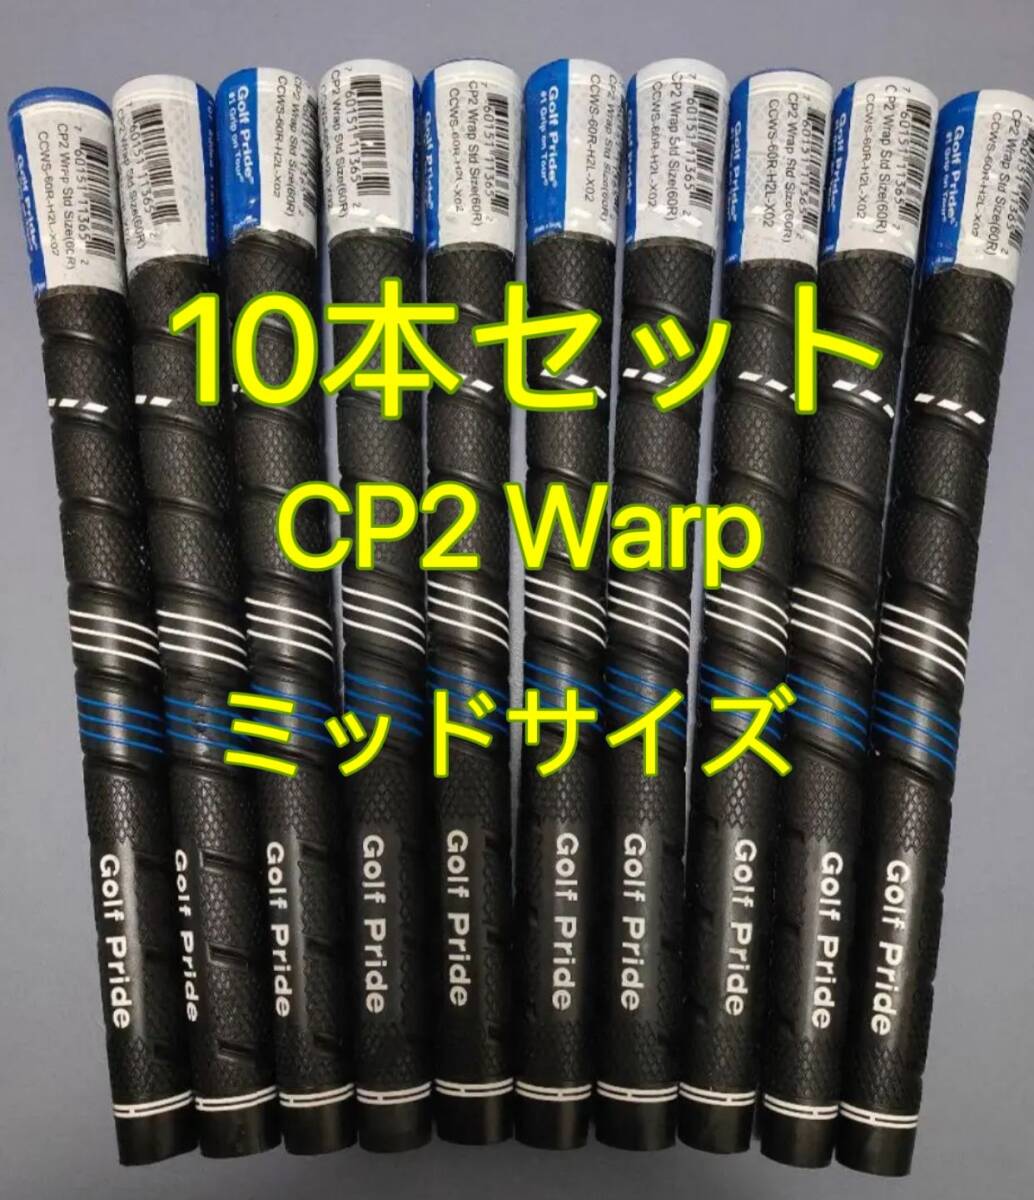 【新品】ゴルフプライド グリップ CP2 Warp ミッドサイズ グリップ 10本セットの画像1